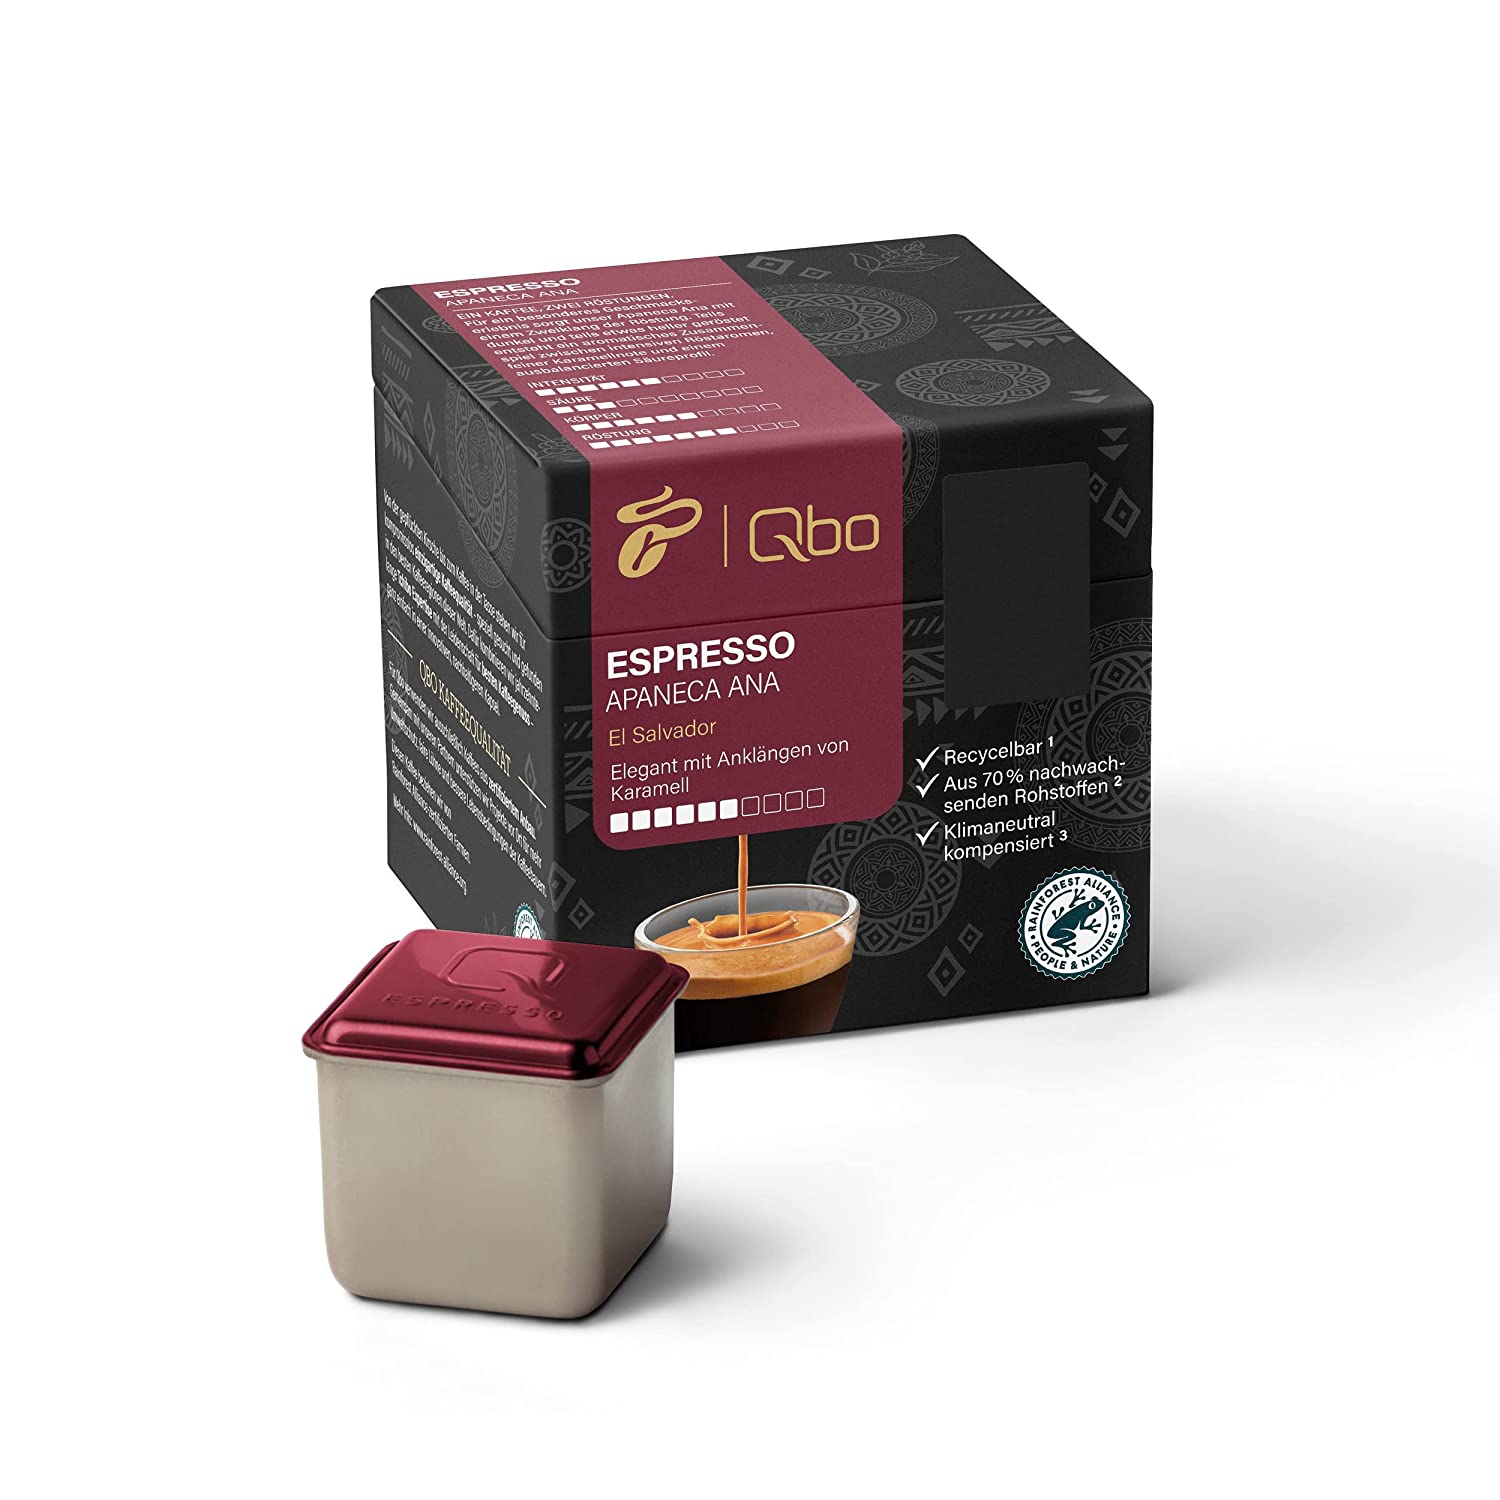 Tchibo Qbo Espresso Apaneca Ana Premium Kaffeekapseln, 8 Stück (Espresso, Intensität 5/10, elegant mit Karamellnote), nachhaltig, aus 70% nachwachsenden Rohstoffen & klimaneutral kompensiert